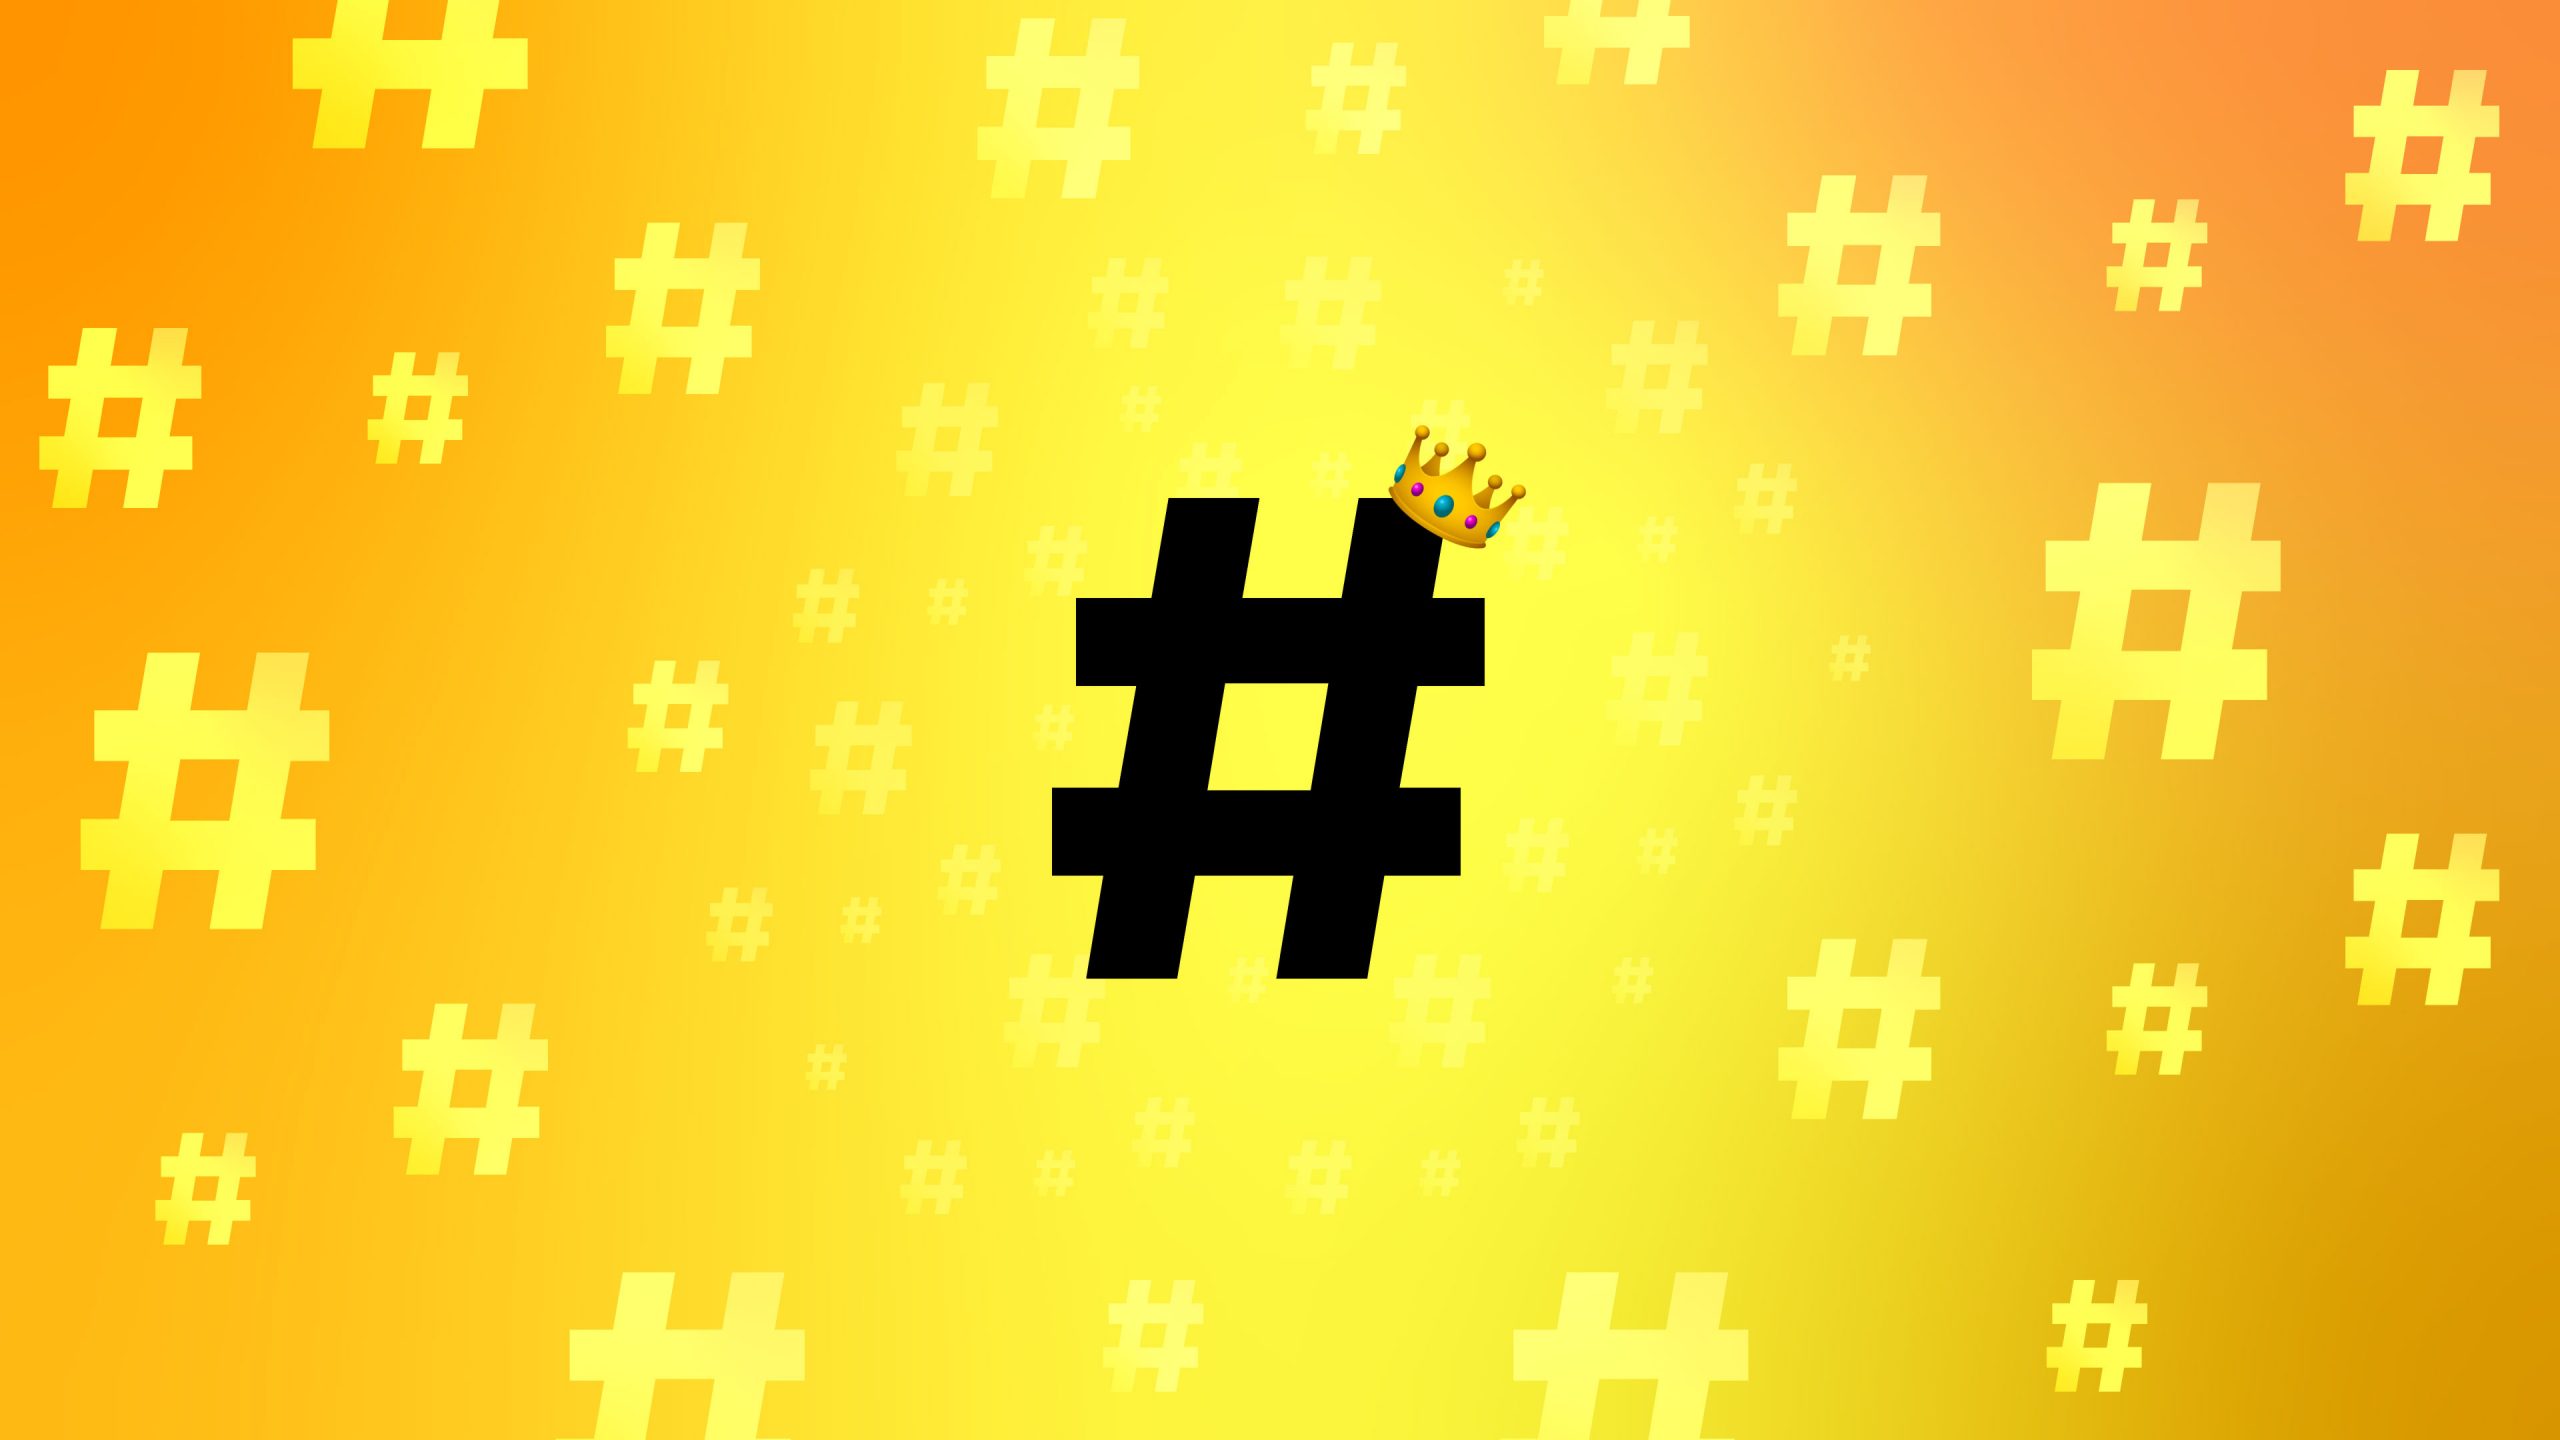 #FelizCumpleaños rey Hashtag, celebramos los 14 años de este símbolo global